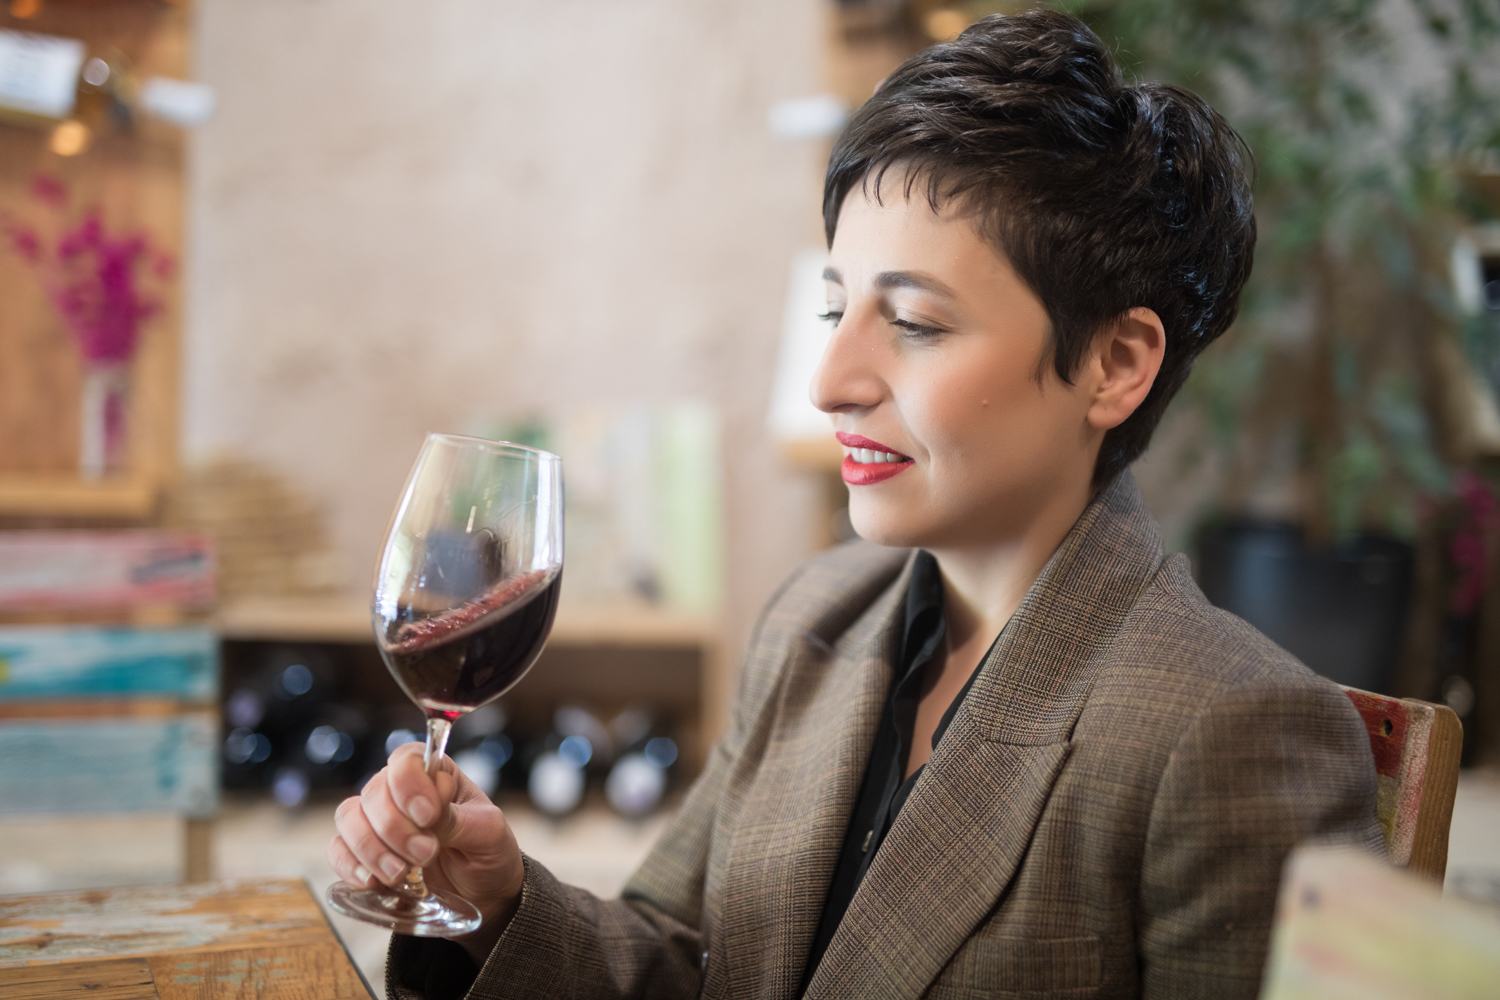 Լիլիա Խաչատրյան. «Ուզում եմ արենի նուարից մեծ գինի պատրաստել»